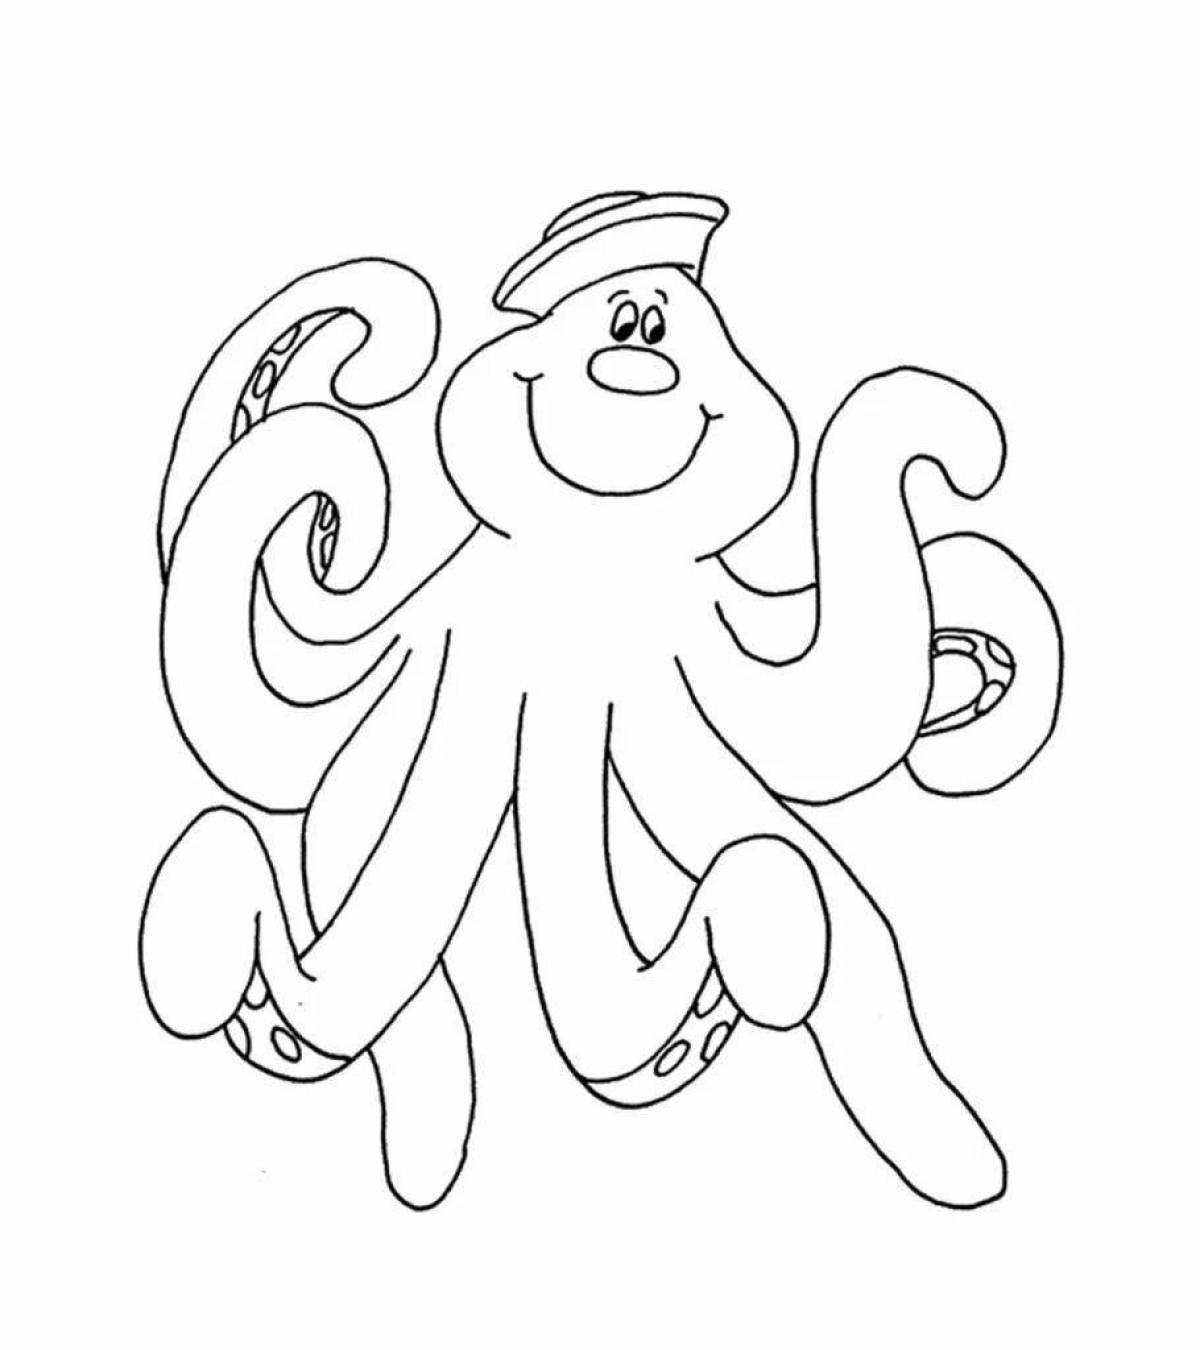 Развлекательная раскраска осьминог для детей